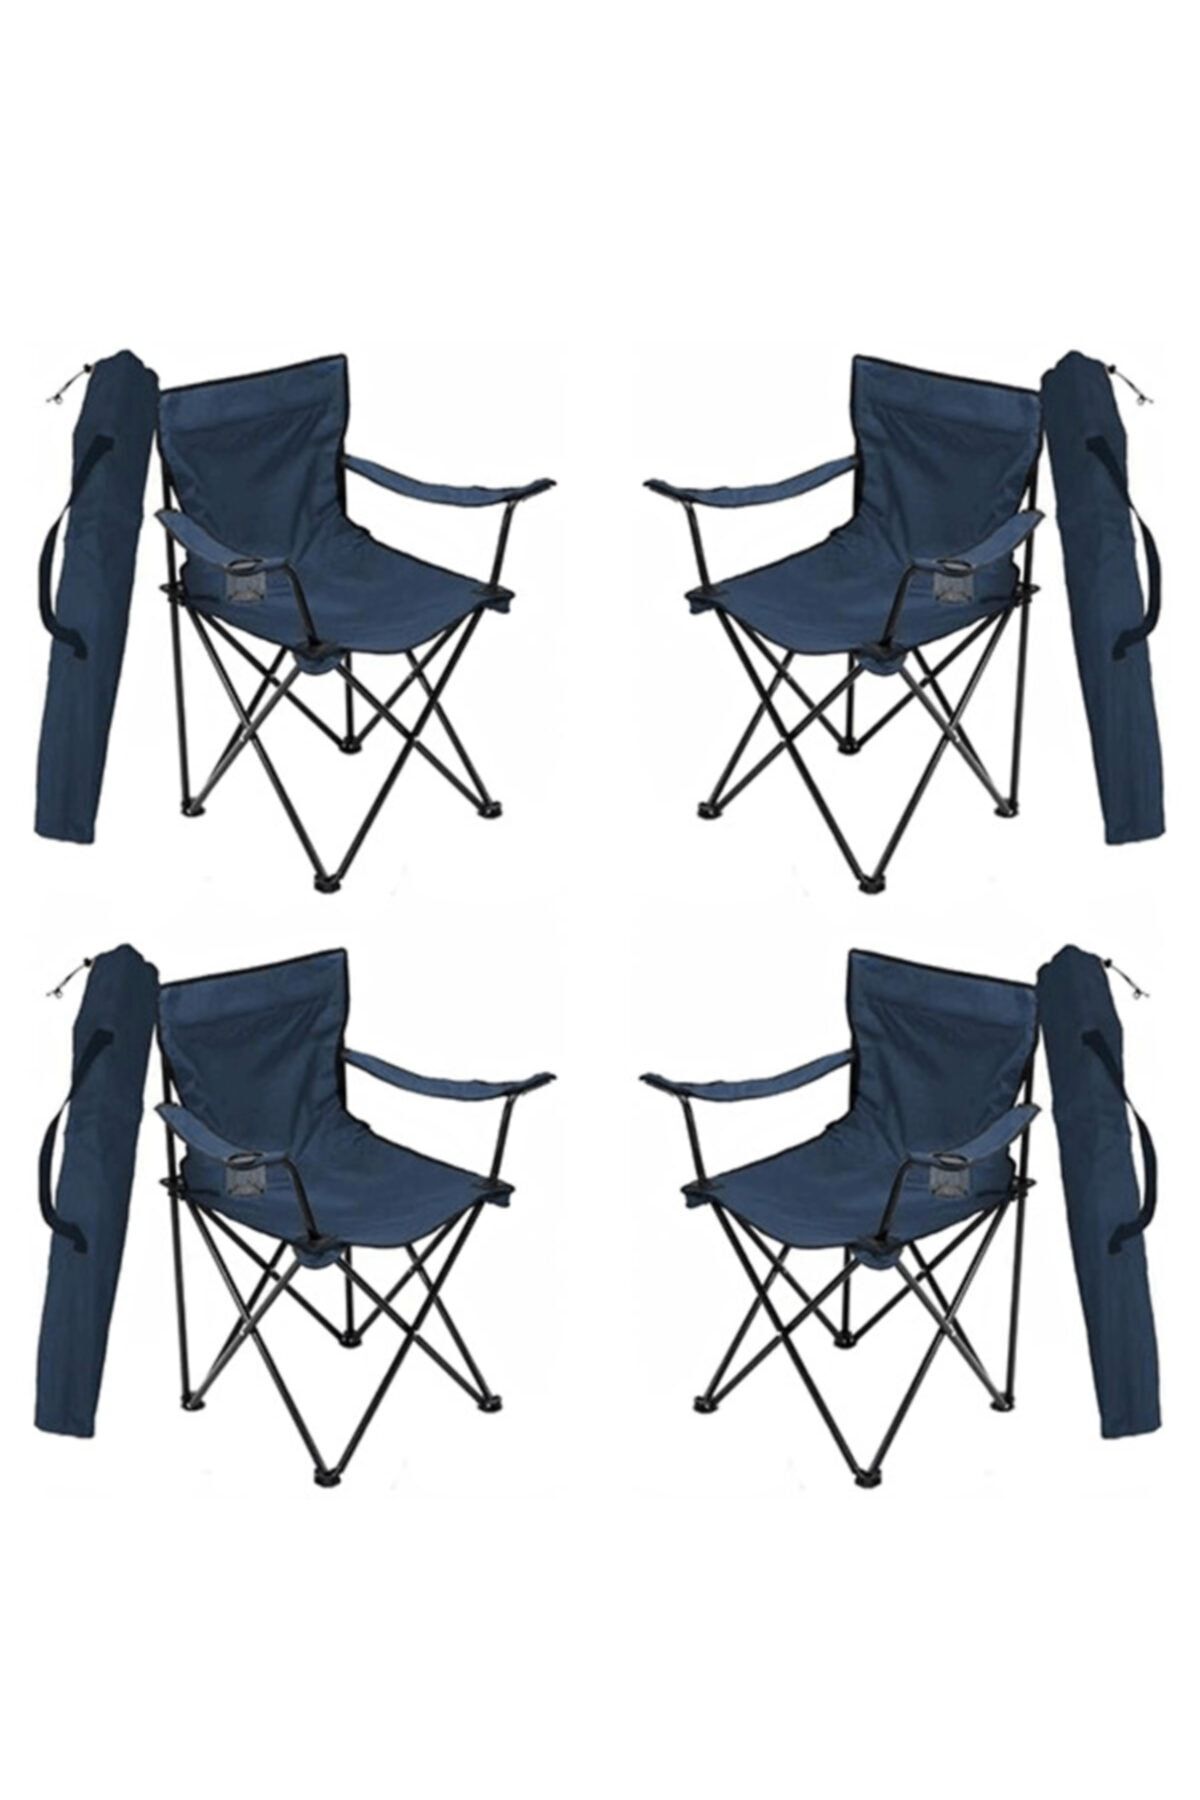 Bofigo 4 Adet Kamp Sandalyesi Katlanır Sandalye Bahçe Koltuğu Piknik Plaj Balkon Sandalyesi Mavi